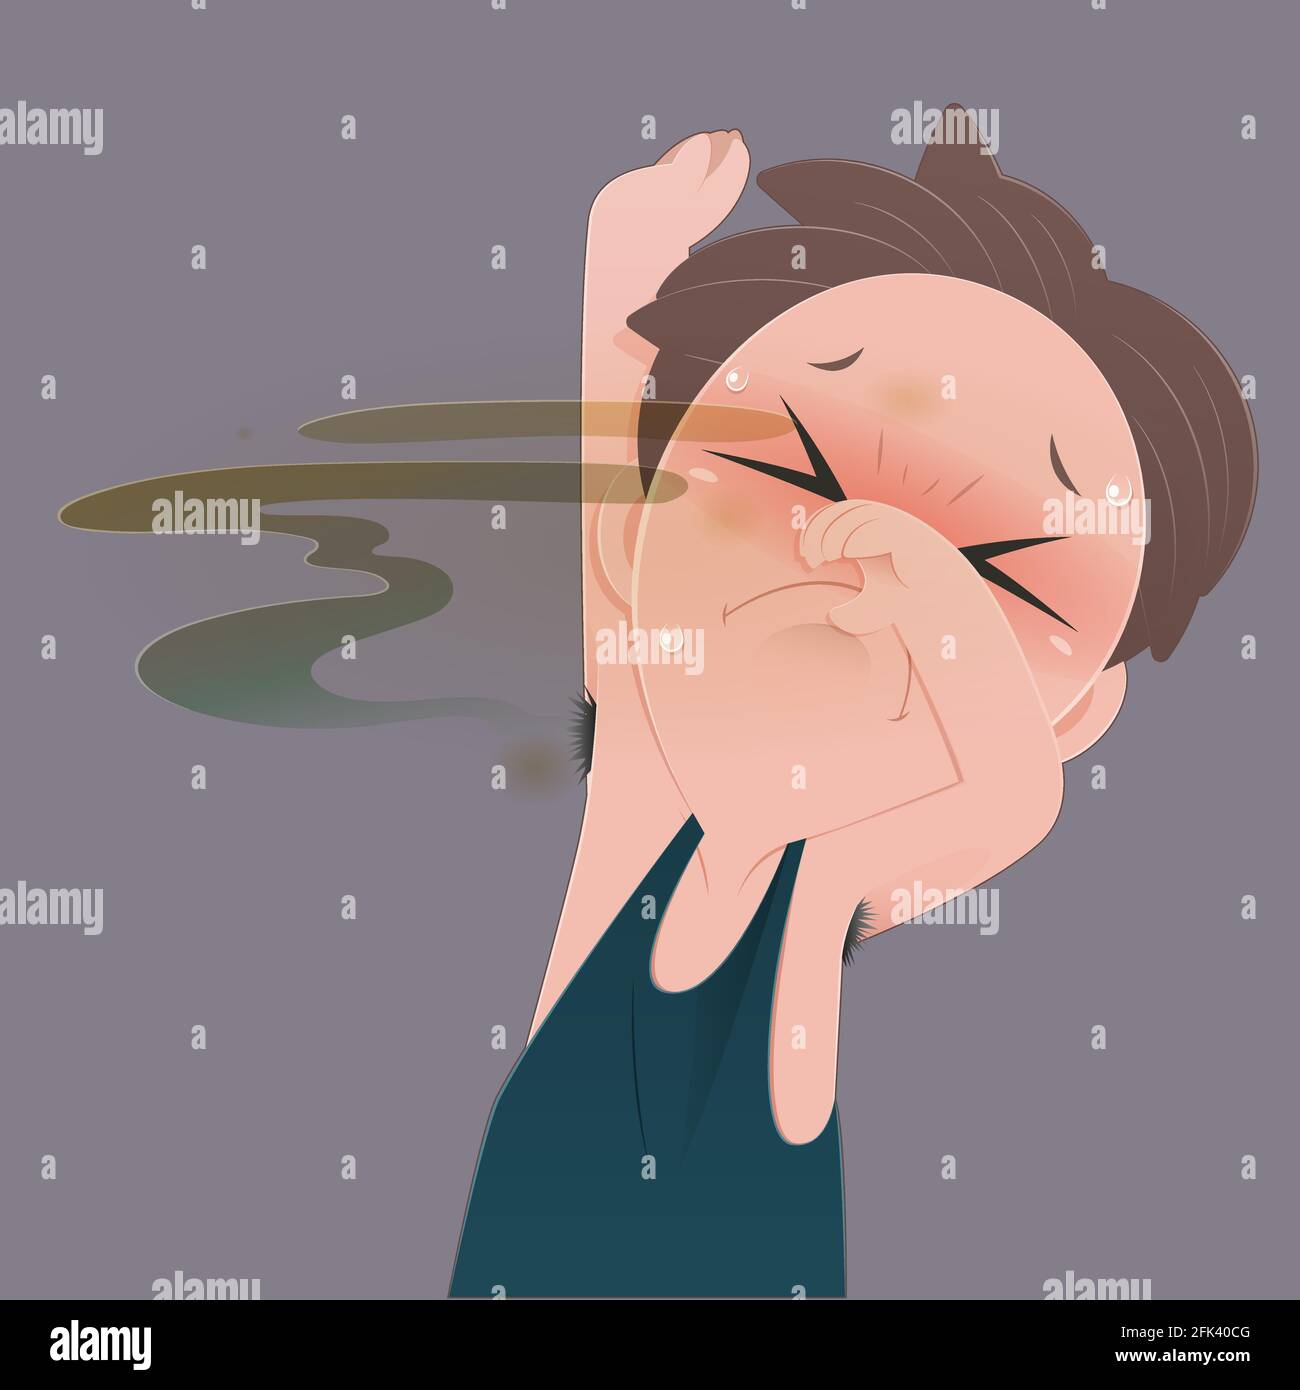 Ein Mann mit grüner Weste riecht seinen schlechten Geruch nasse Achselhöhle und Körpergeruch vor grauem Hintergrund, Vektor-Illustration Stock Vektor